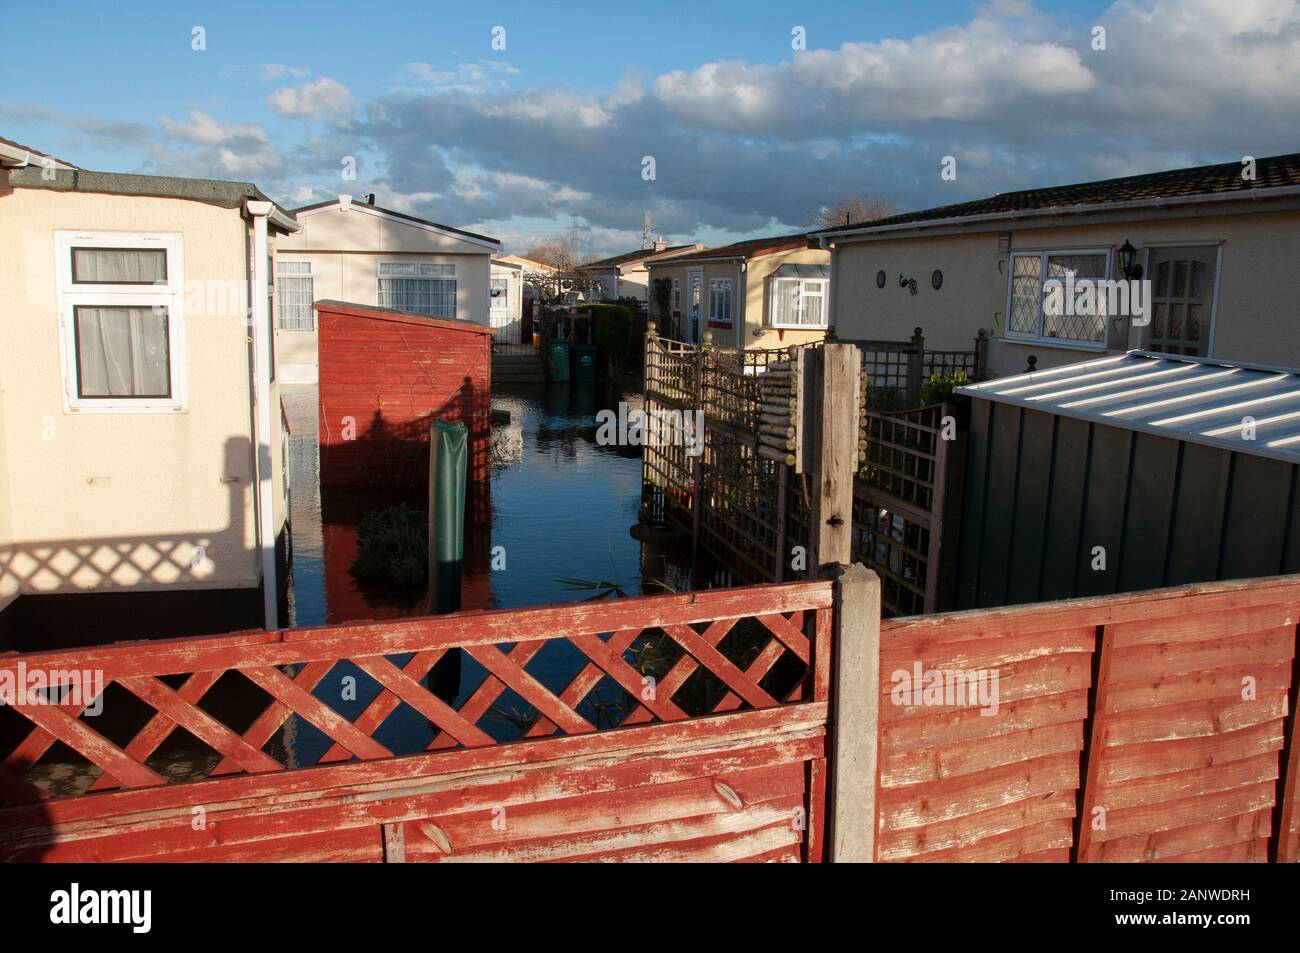 CHERTSEY, UK - 20 févr. 2014 - graves inondations après la Tamise burst c'est banques dans la partie supérieure près de Chertsey Surrey England UK Banque D'Images